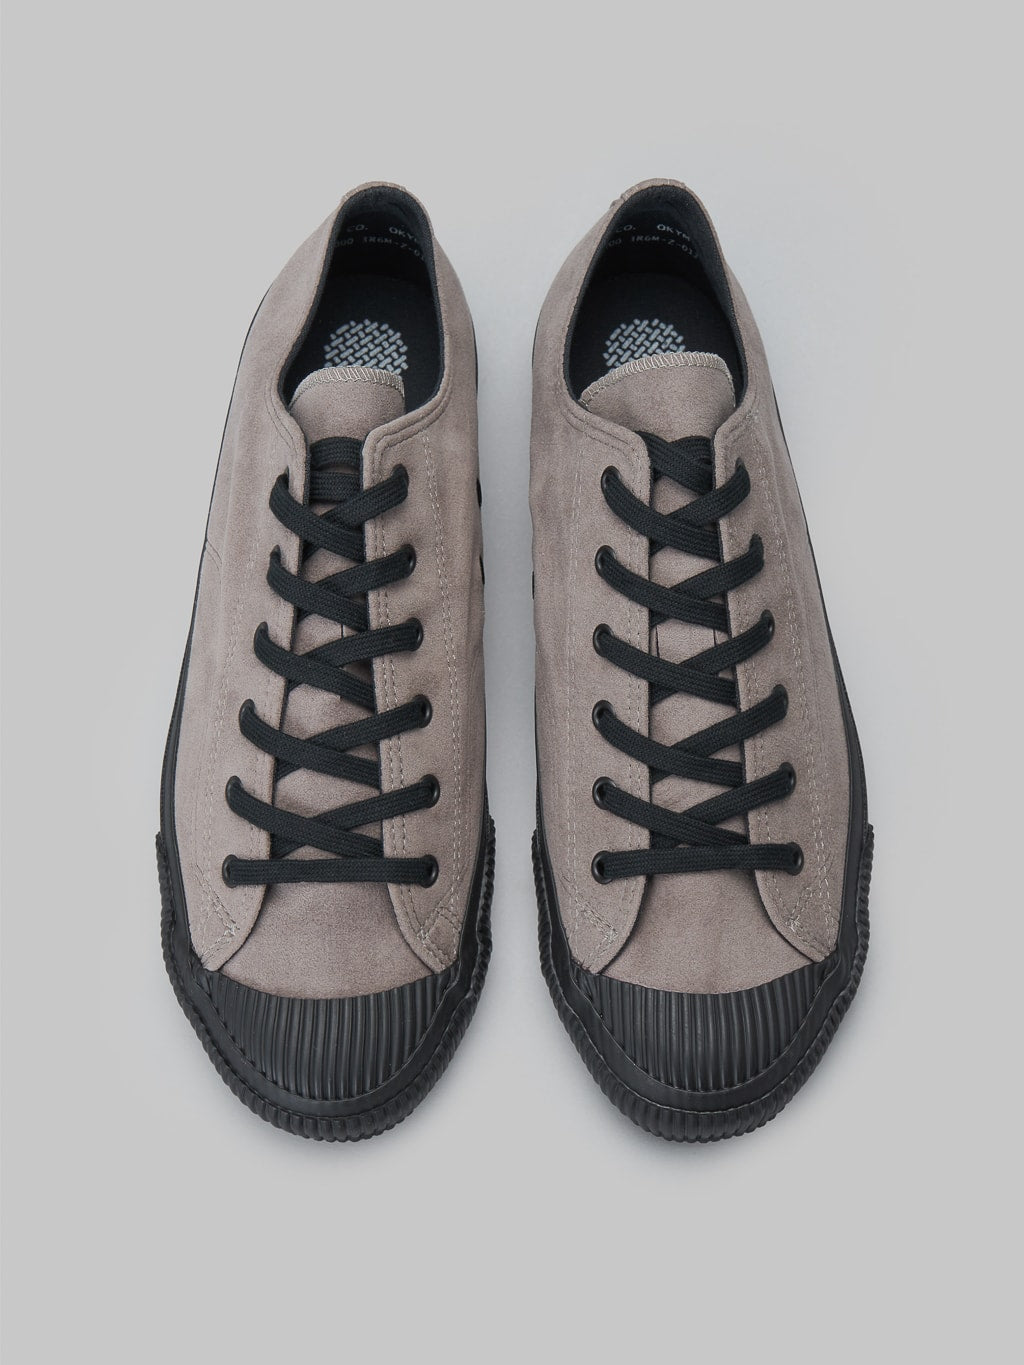 Pras shellcap low vegan sneakers suede grey black craftsmanship